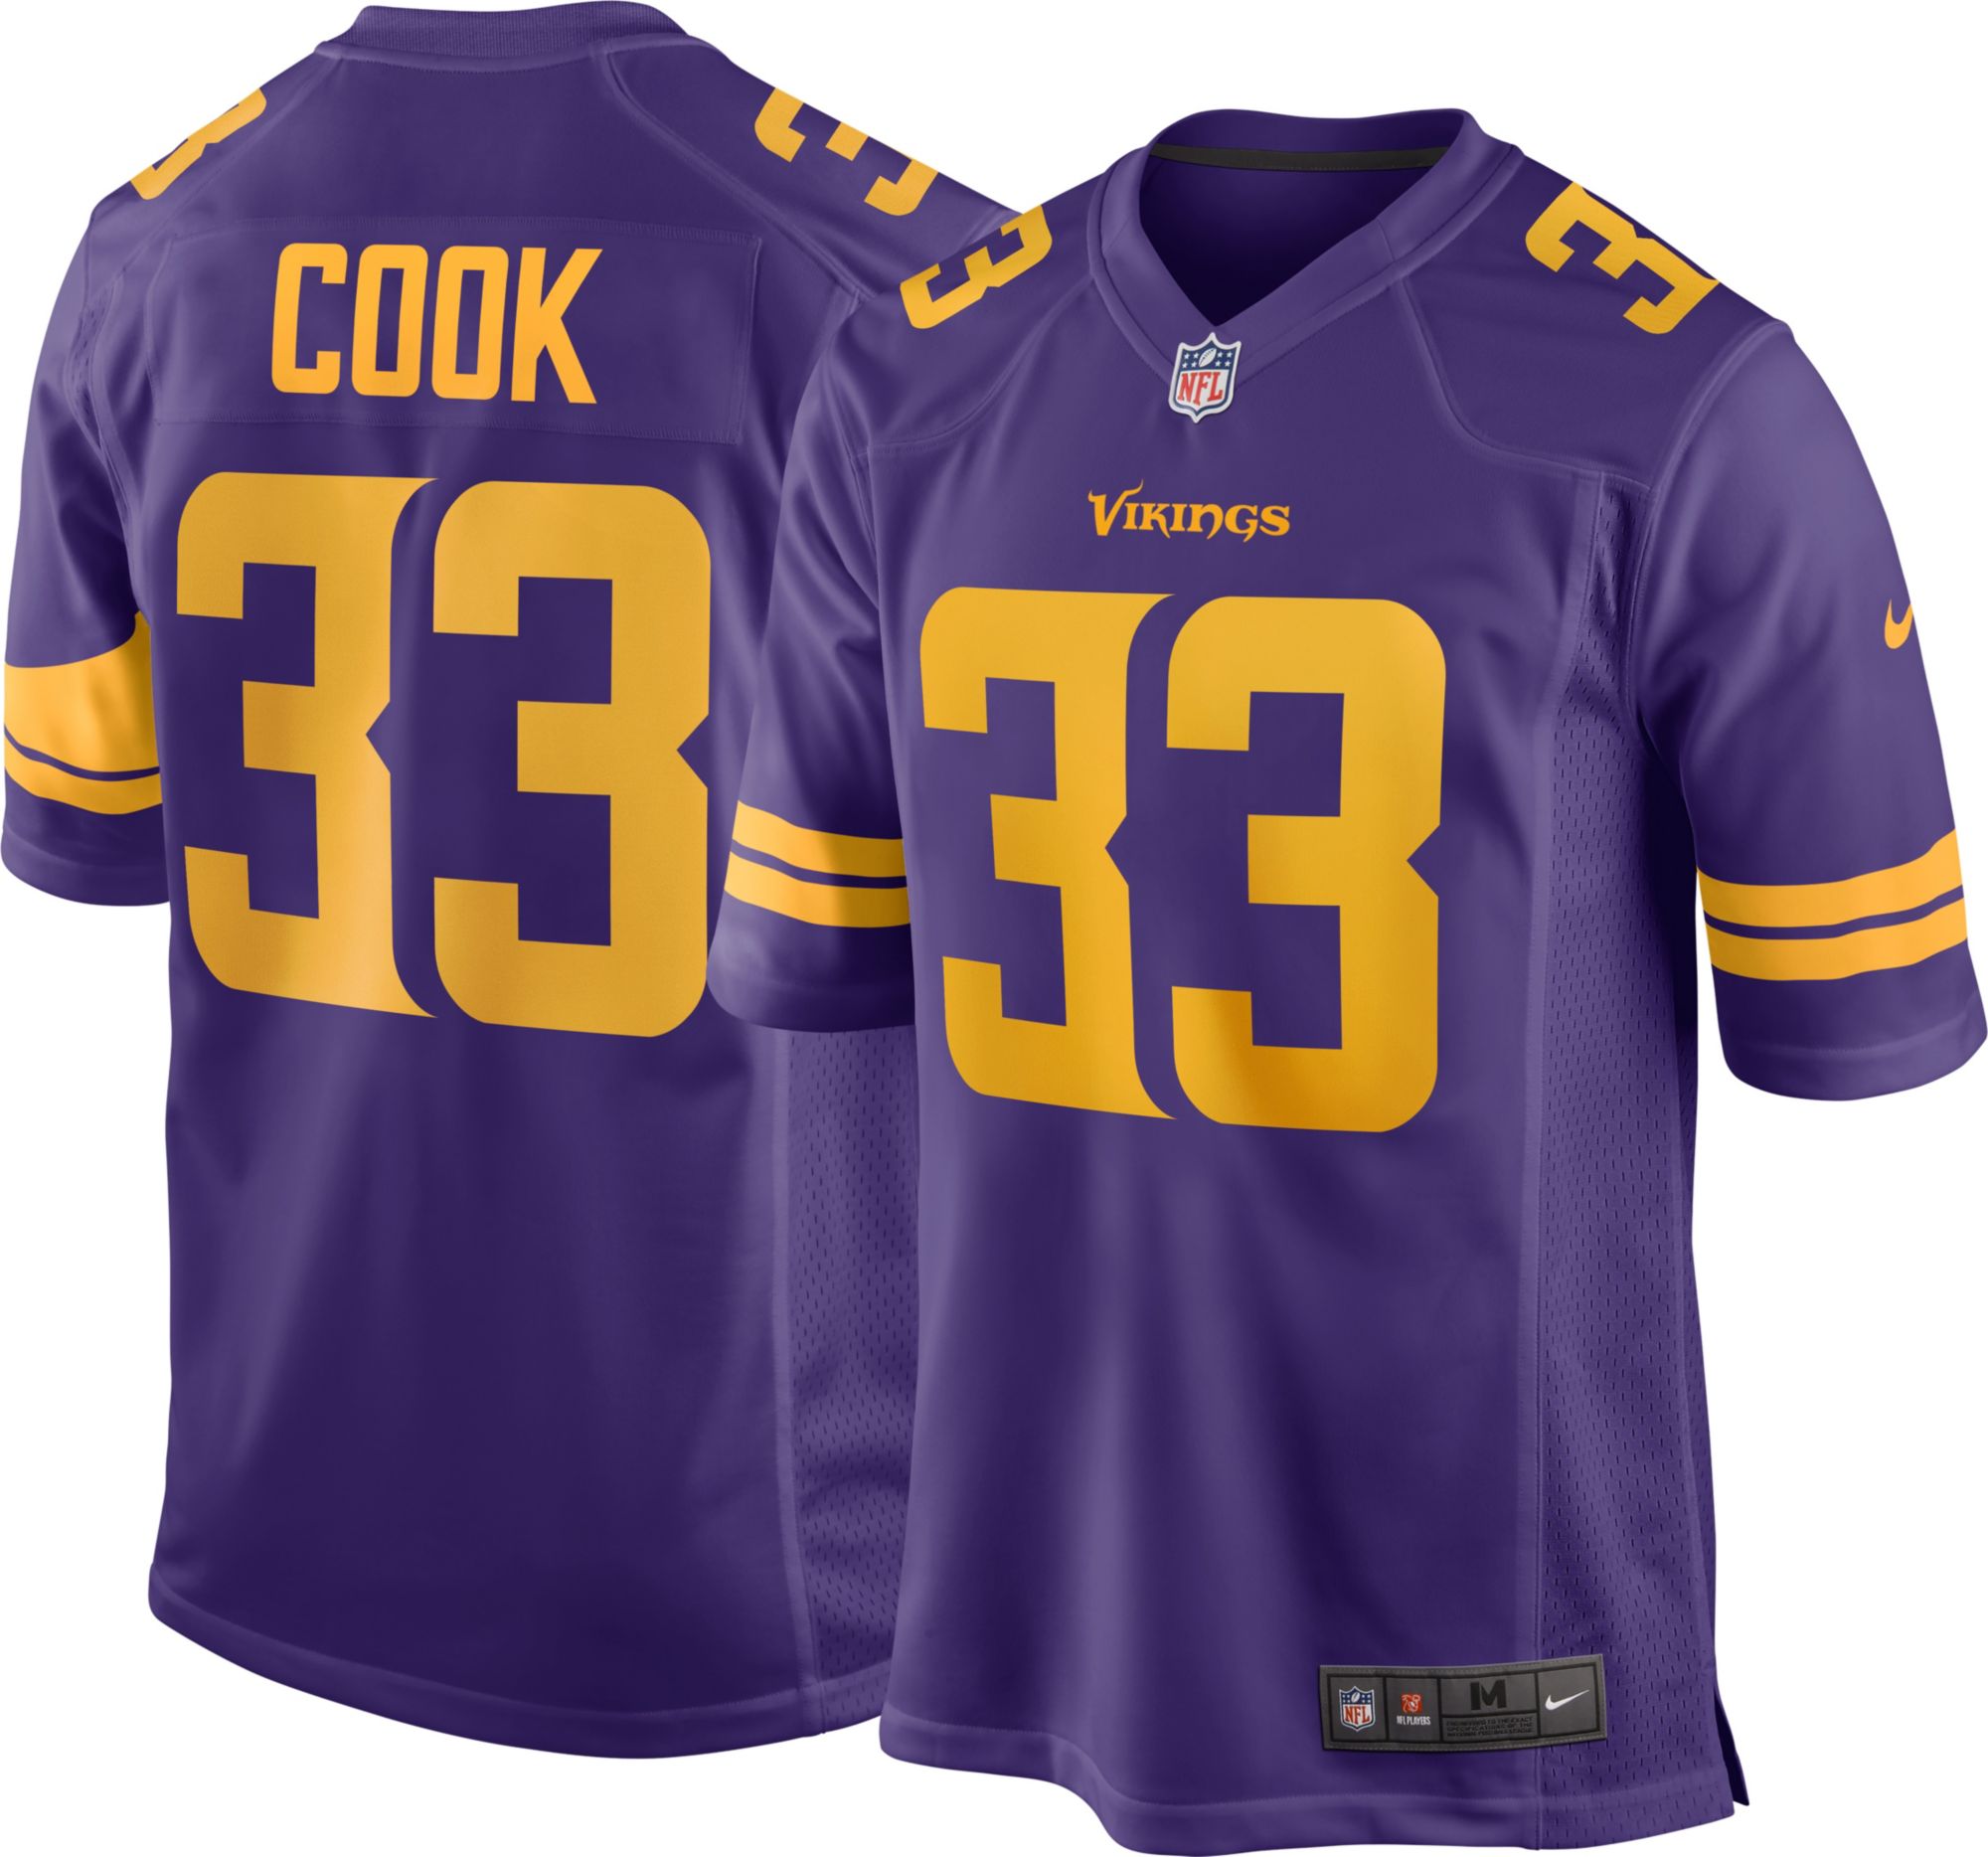 Nike / Men's Minnesota Vikings Dalvin Cook #33 Purple Game Jersey